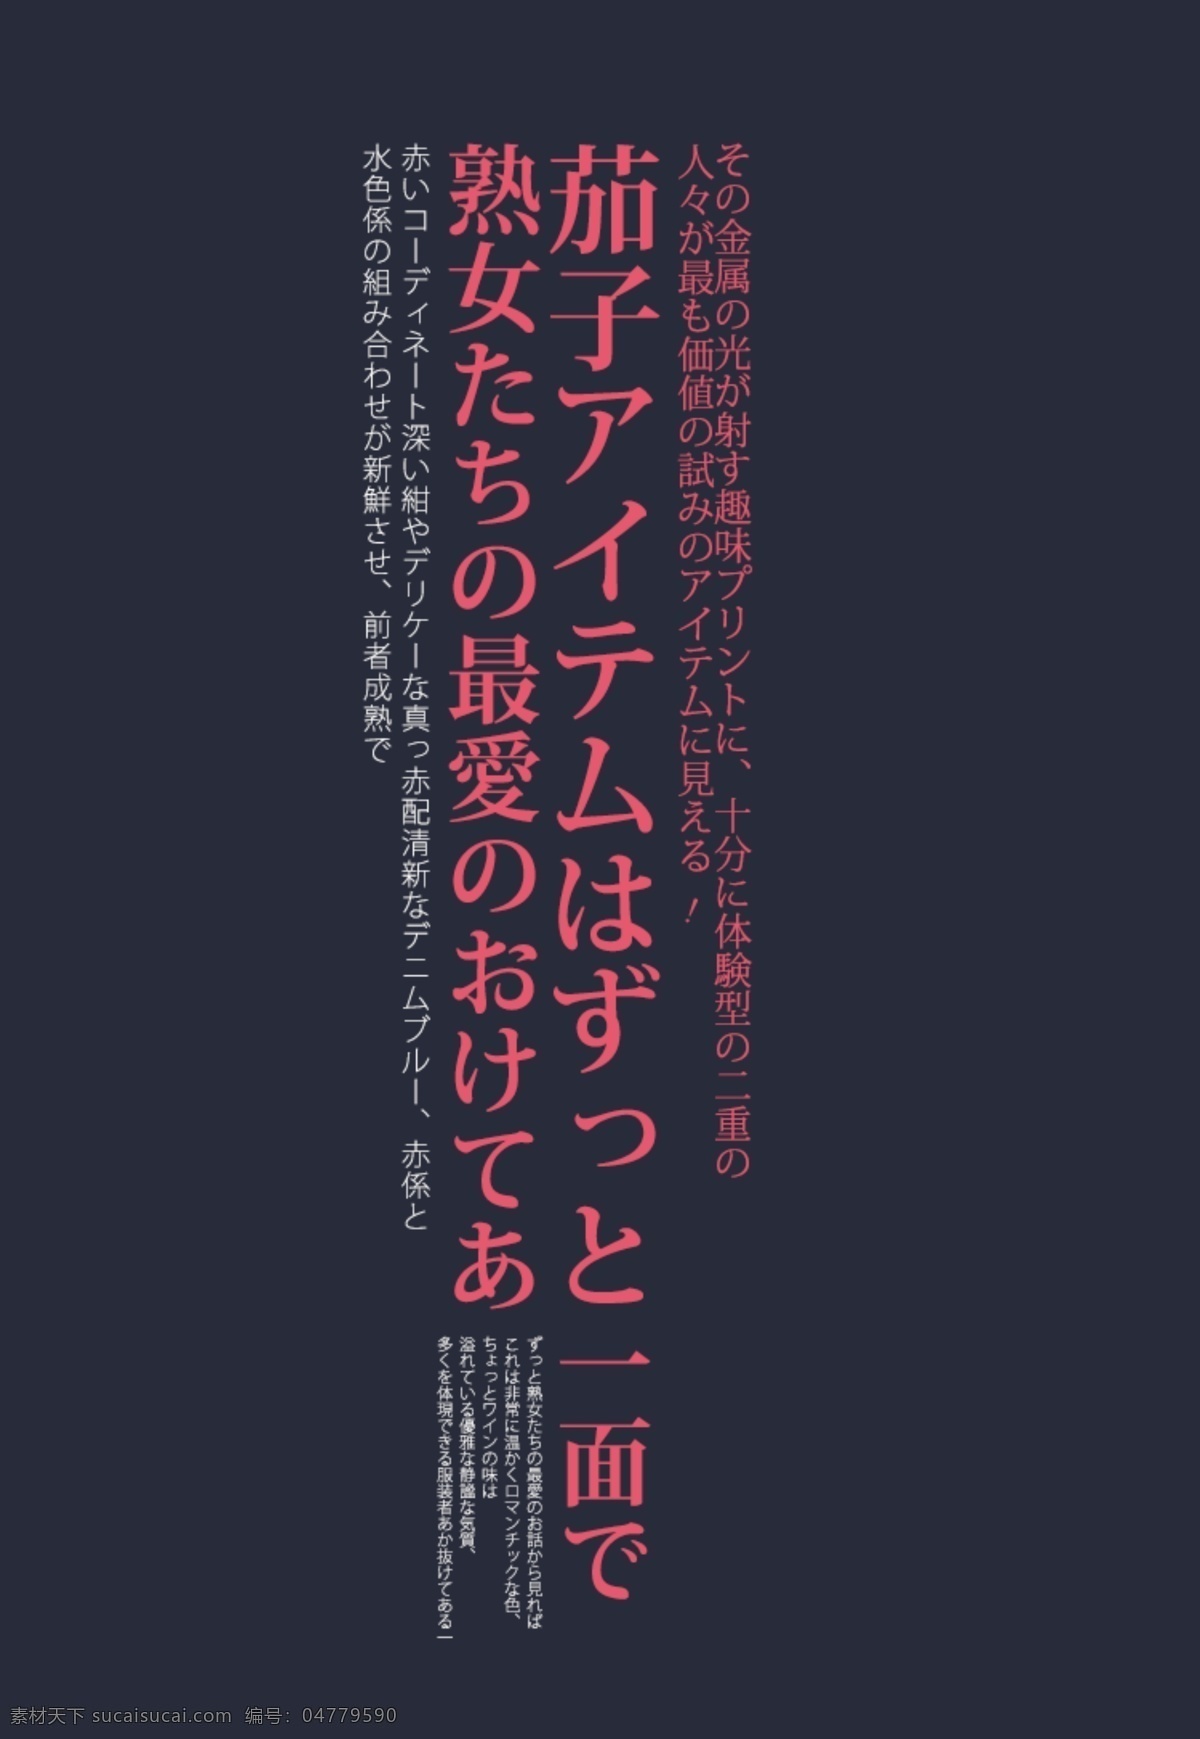 日文排版 排版样式 日文 文字排版 psd素材 排版设计 日系字体排版 封面排版 日式排版 日系排版 字体排版 日系字体 黑色